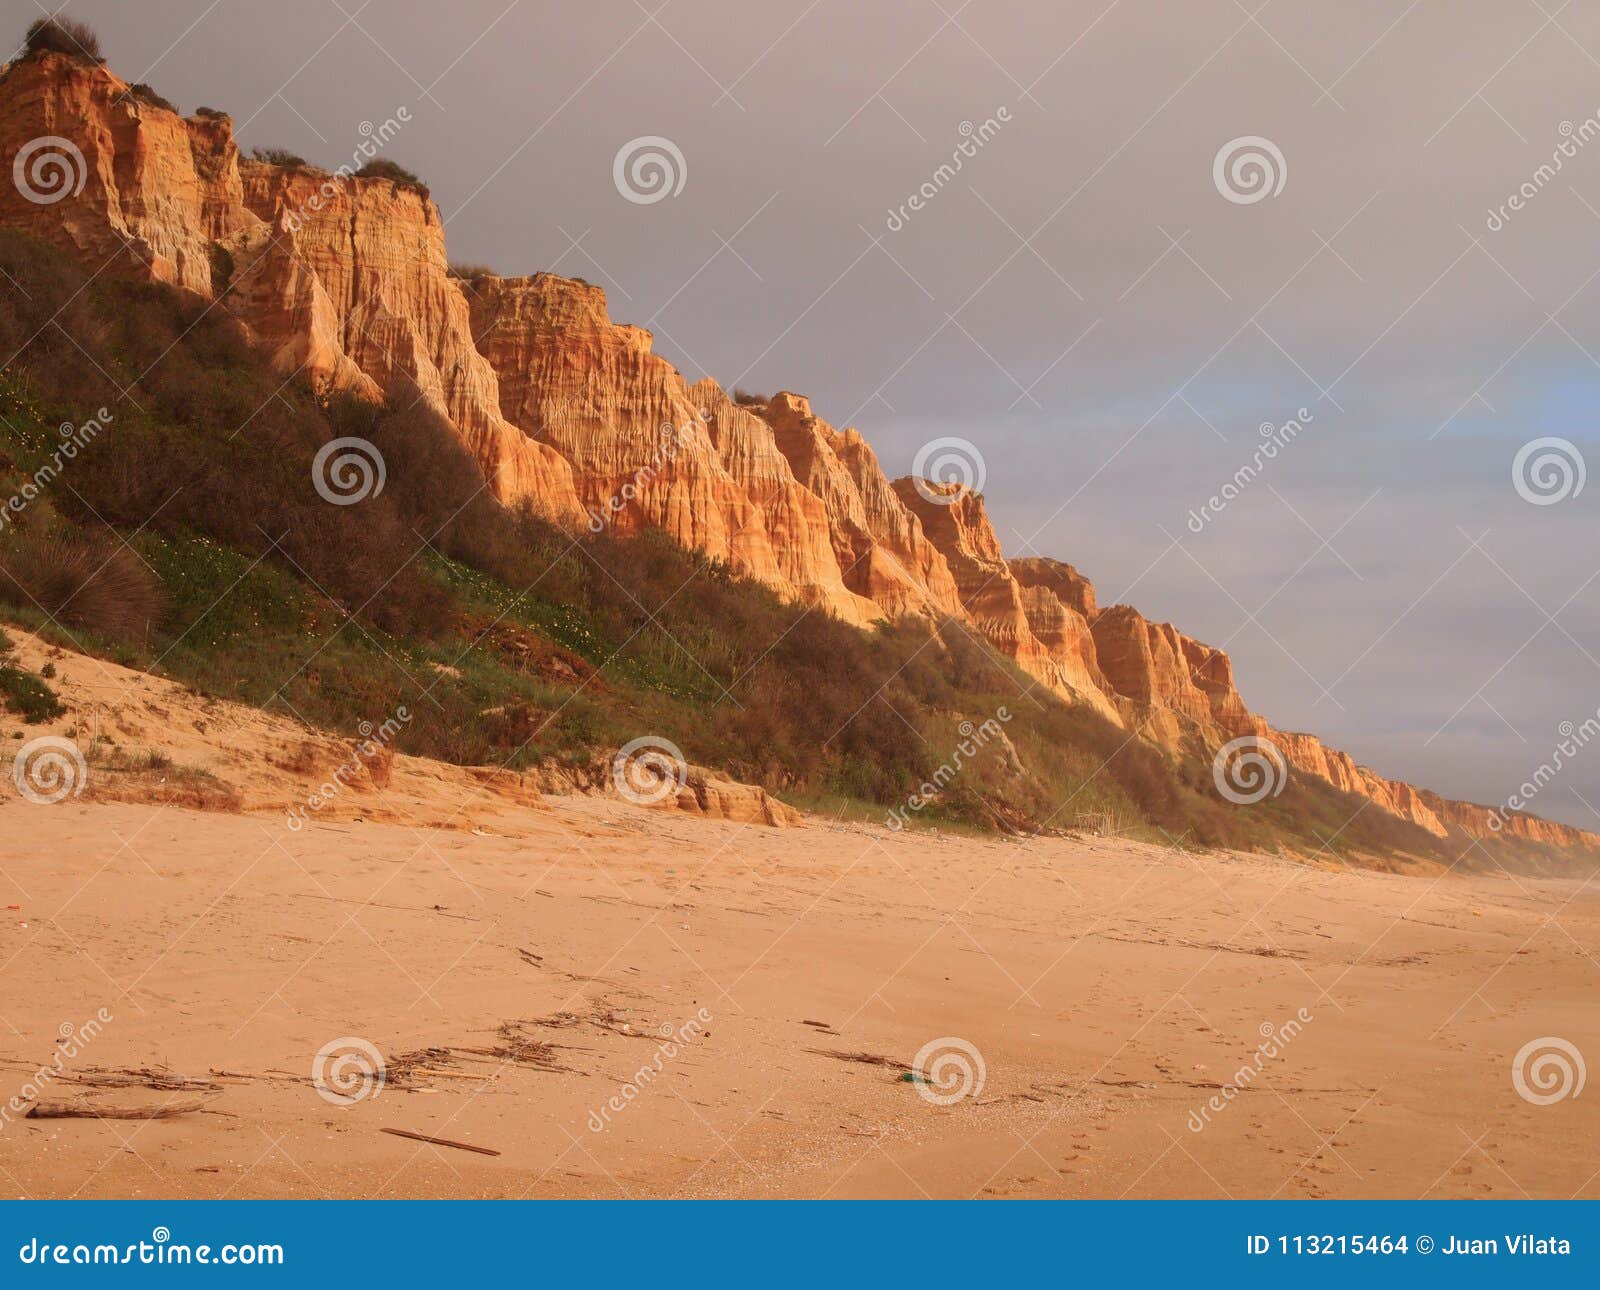 costa da caparica, a natural reserve and portugalÃ¢â¬â¢s largest contiguous beach